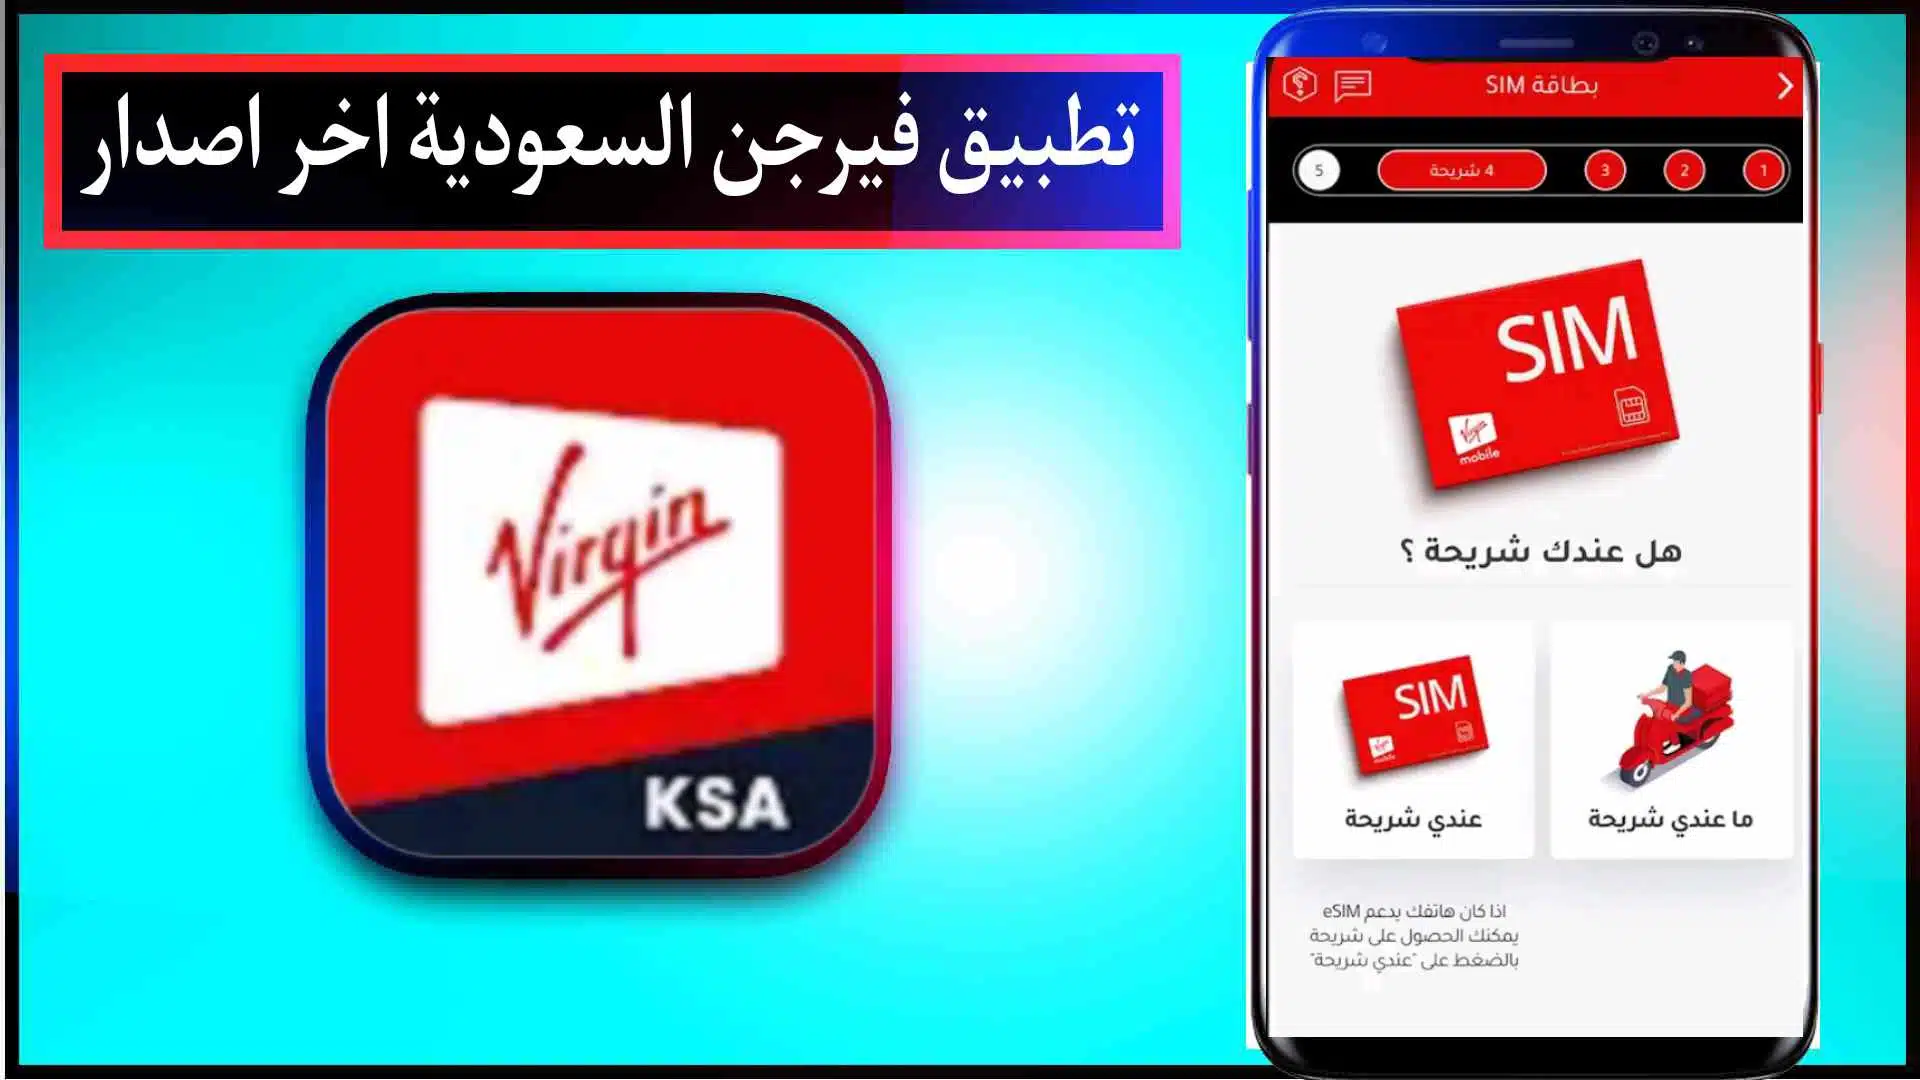 تحميل تطبيق فيرجن السعودية اخر اصدار للاندرويد وللايفون Virgin mobile KSA 2